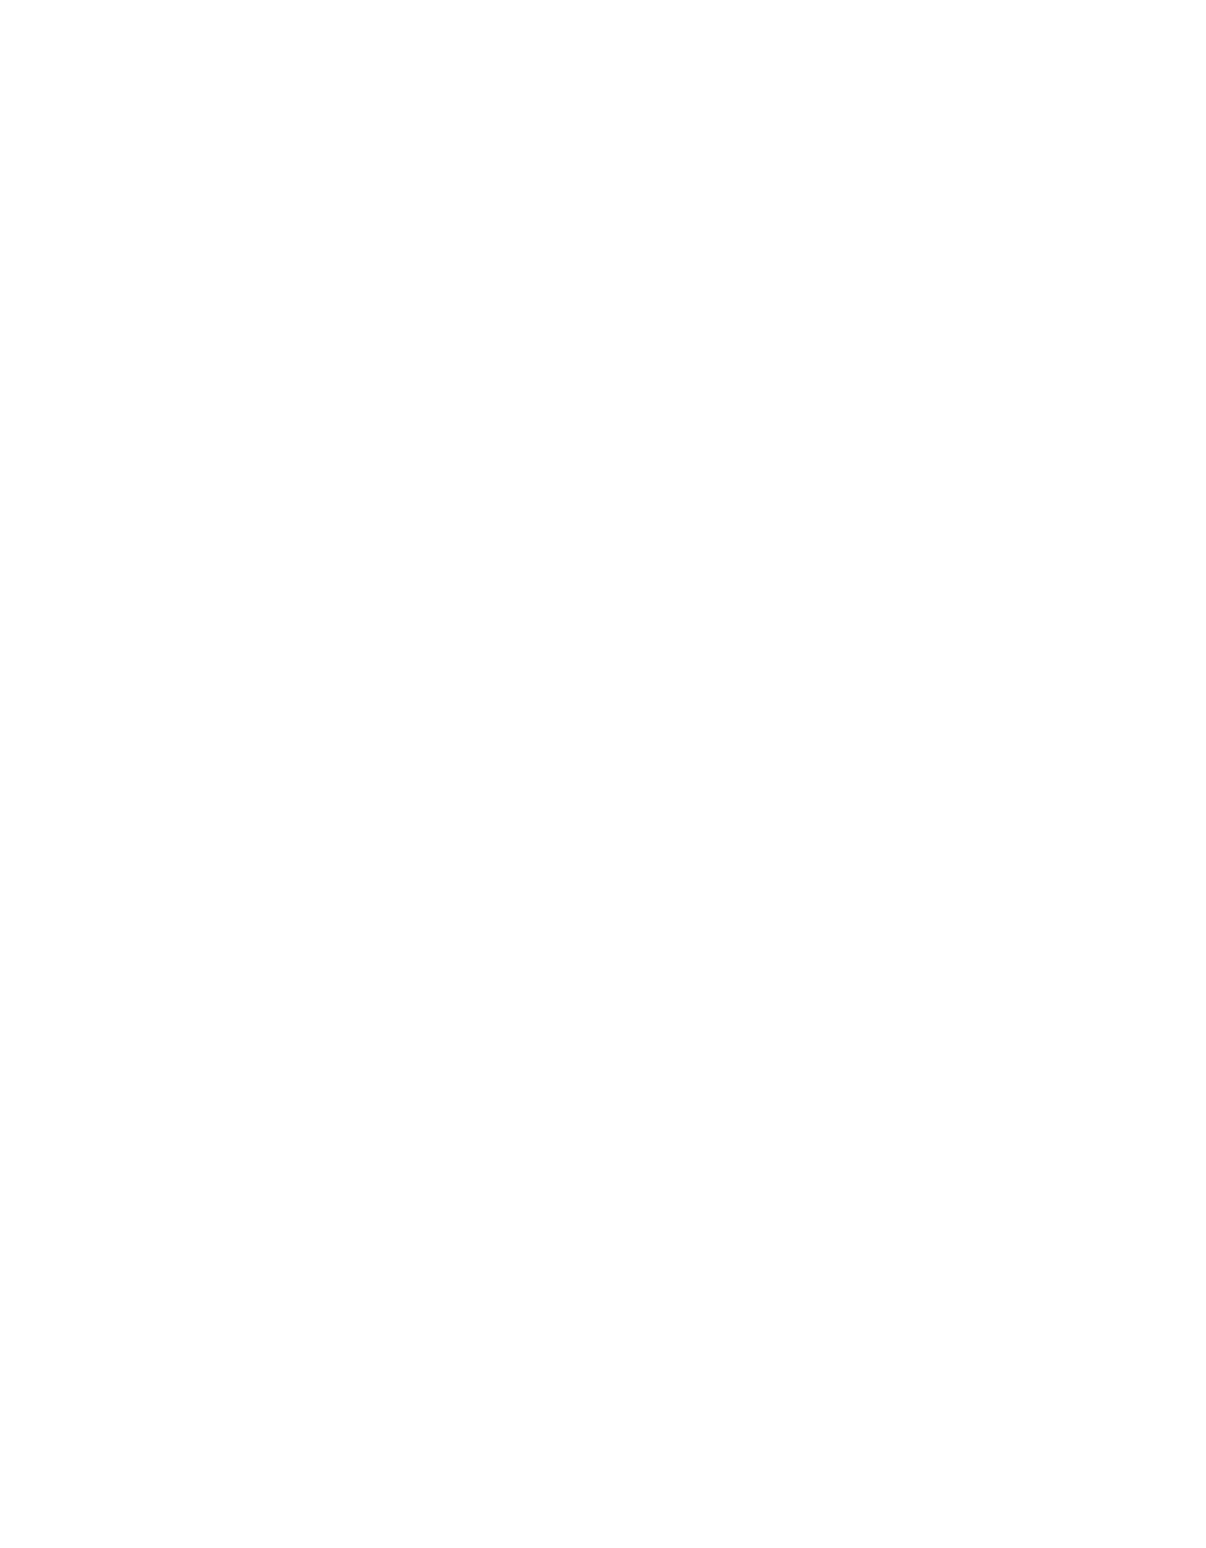 Havertys logo pour fonds sombres (PNG transparent)